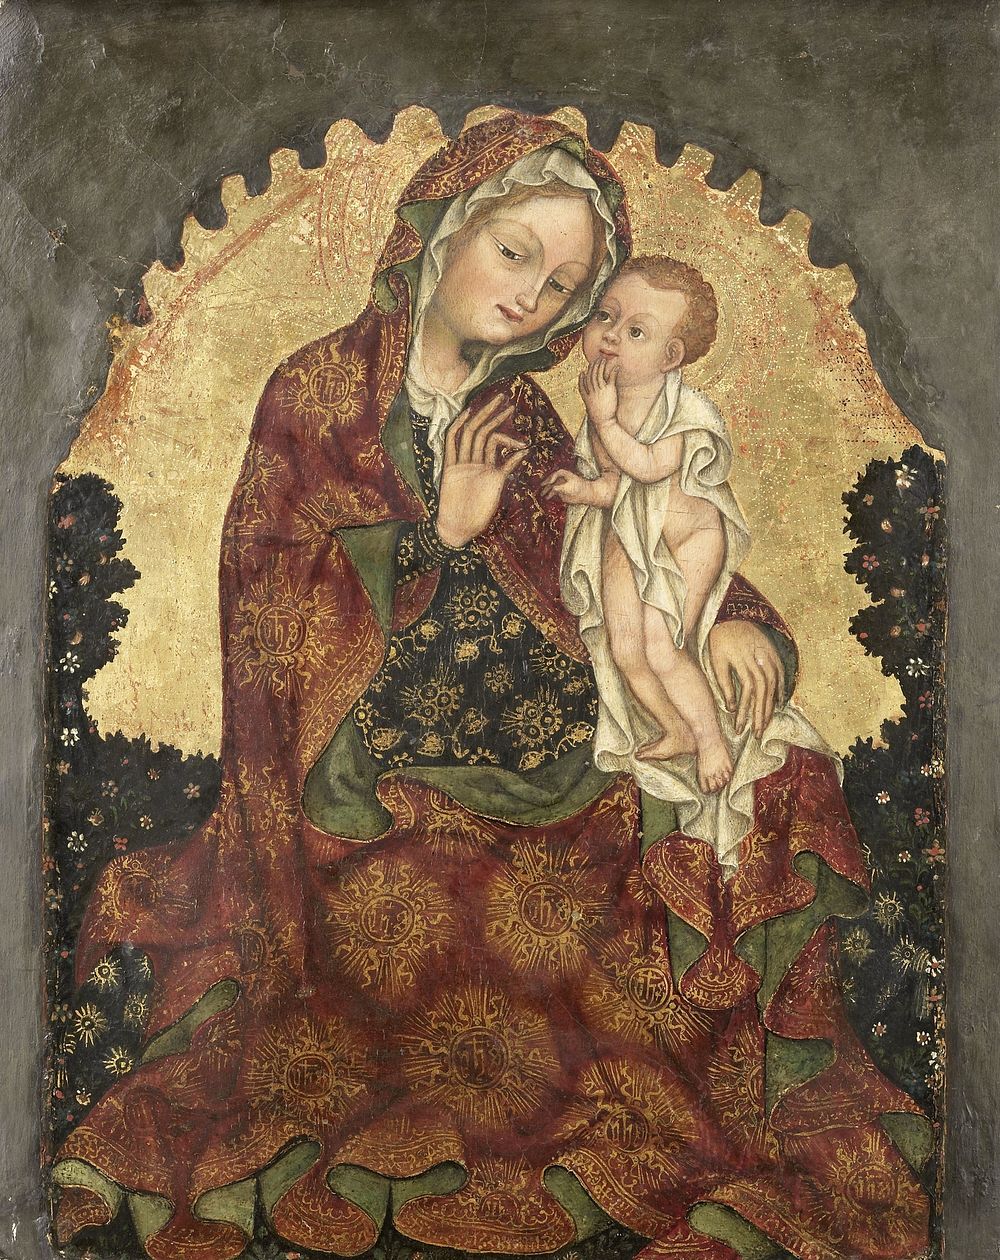 Madonna of Humility (1429 - 1439) by Giovanni da Francia